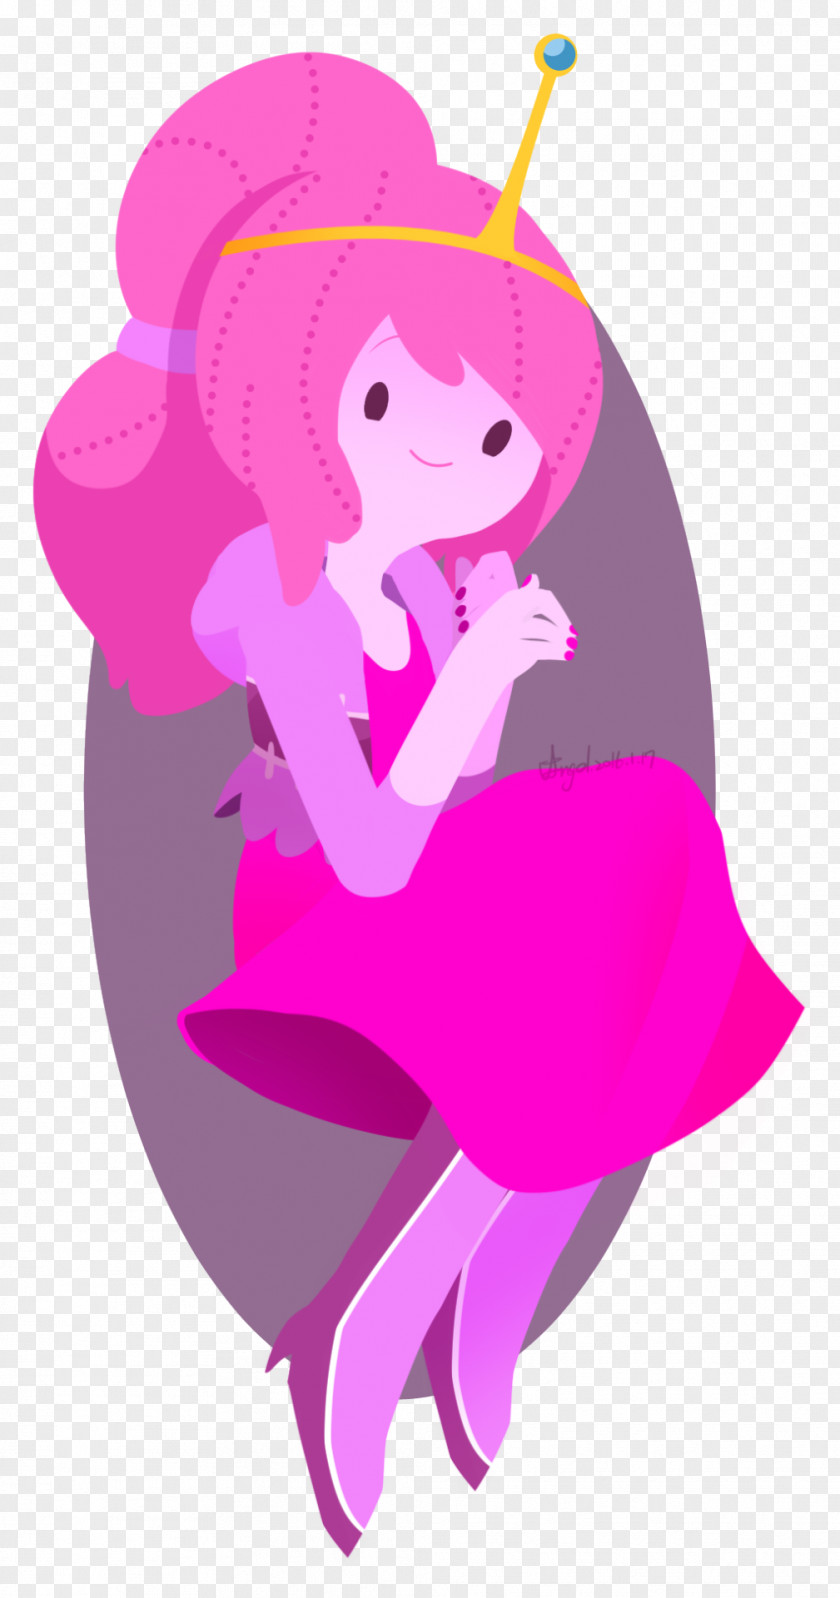 Bubblegum Princess Bonnibel Chewing Gum Illustration Clip Art PNG